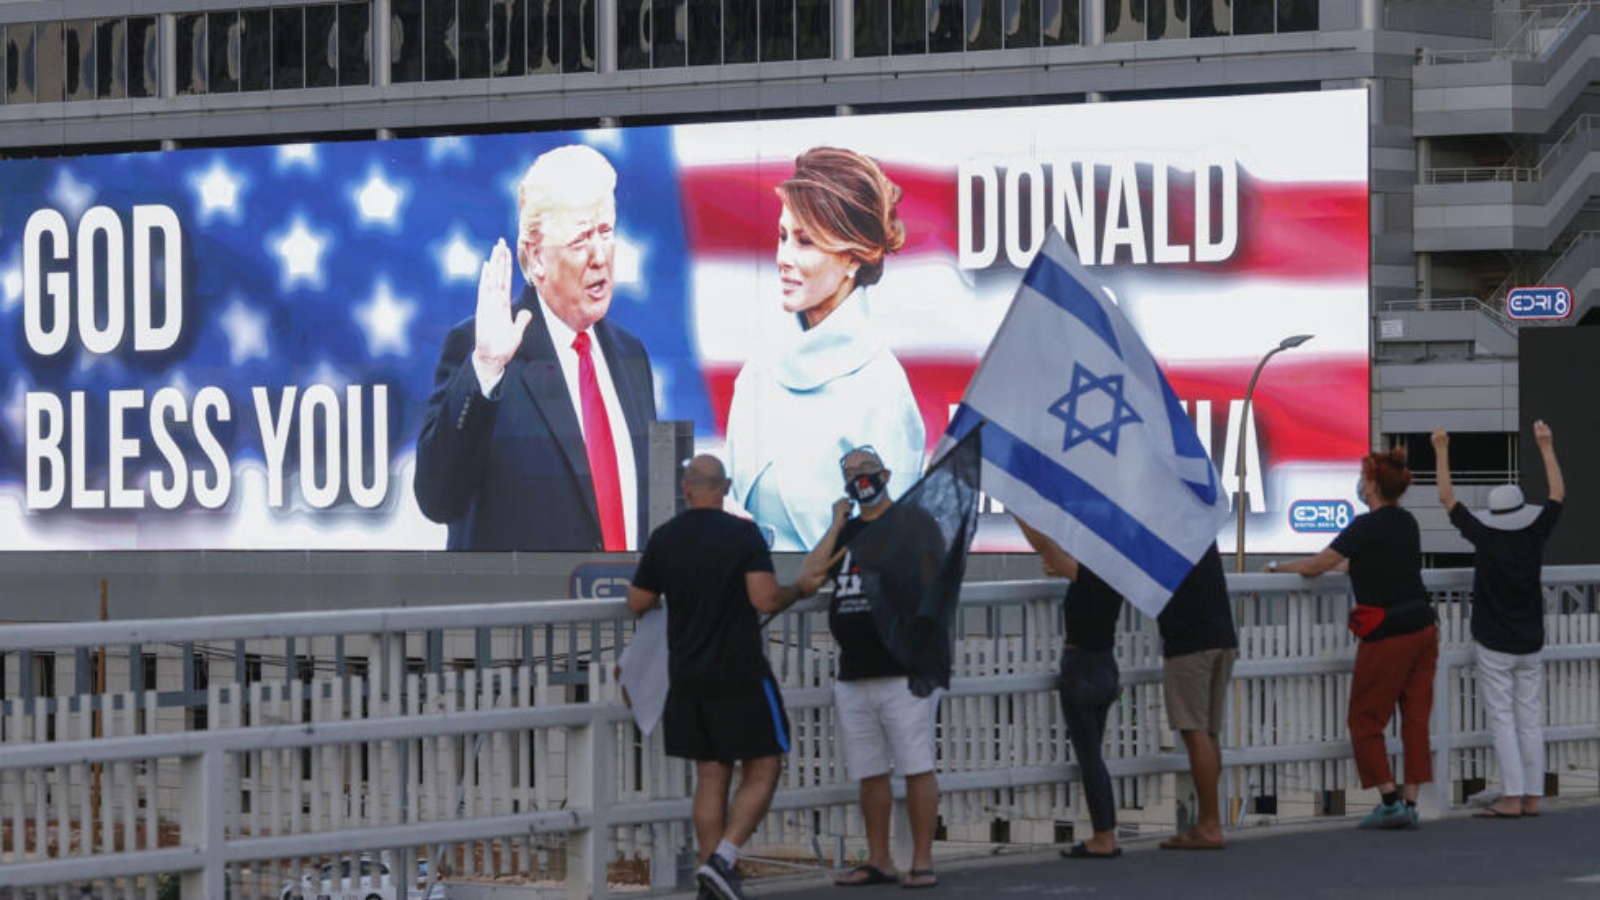 متظاهرون مناهضون للحكومة الإسرائيلية يرفعون العلم الإسرائيلي على جسر أمامه صورة كبيرة لدونالد ترامب وزوجته ميلانيا في تل أبيب بتاريخ 3 تشرين الأول/أكتوبر 2020 متظاهرون مناهضون للحكومة الإسرائيلية يرفعون العلم الإسرائيلي على جسر أمامه صورة كبيرة لدونالد ترامب وزوجته ميلانيا في تل أبيب بتاريخ 3 تشرين الأول (أكتوبر) 2020 